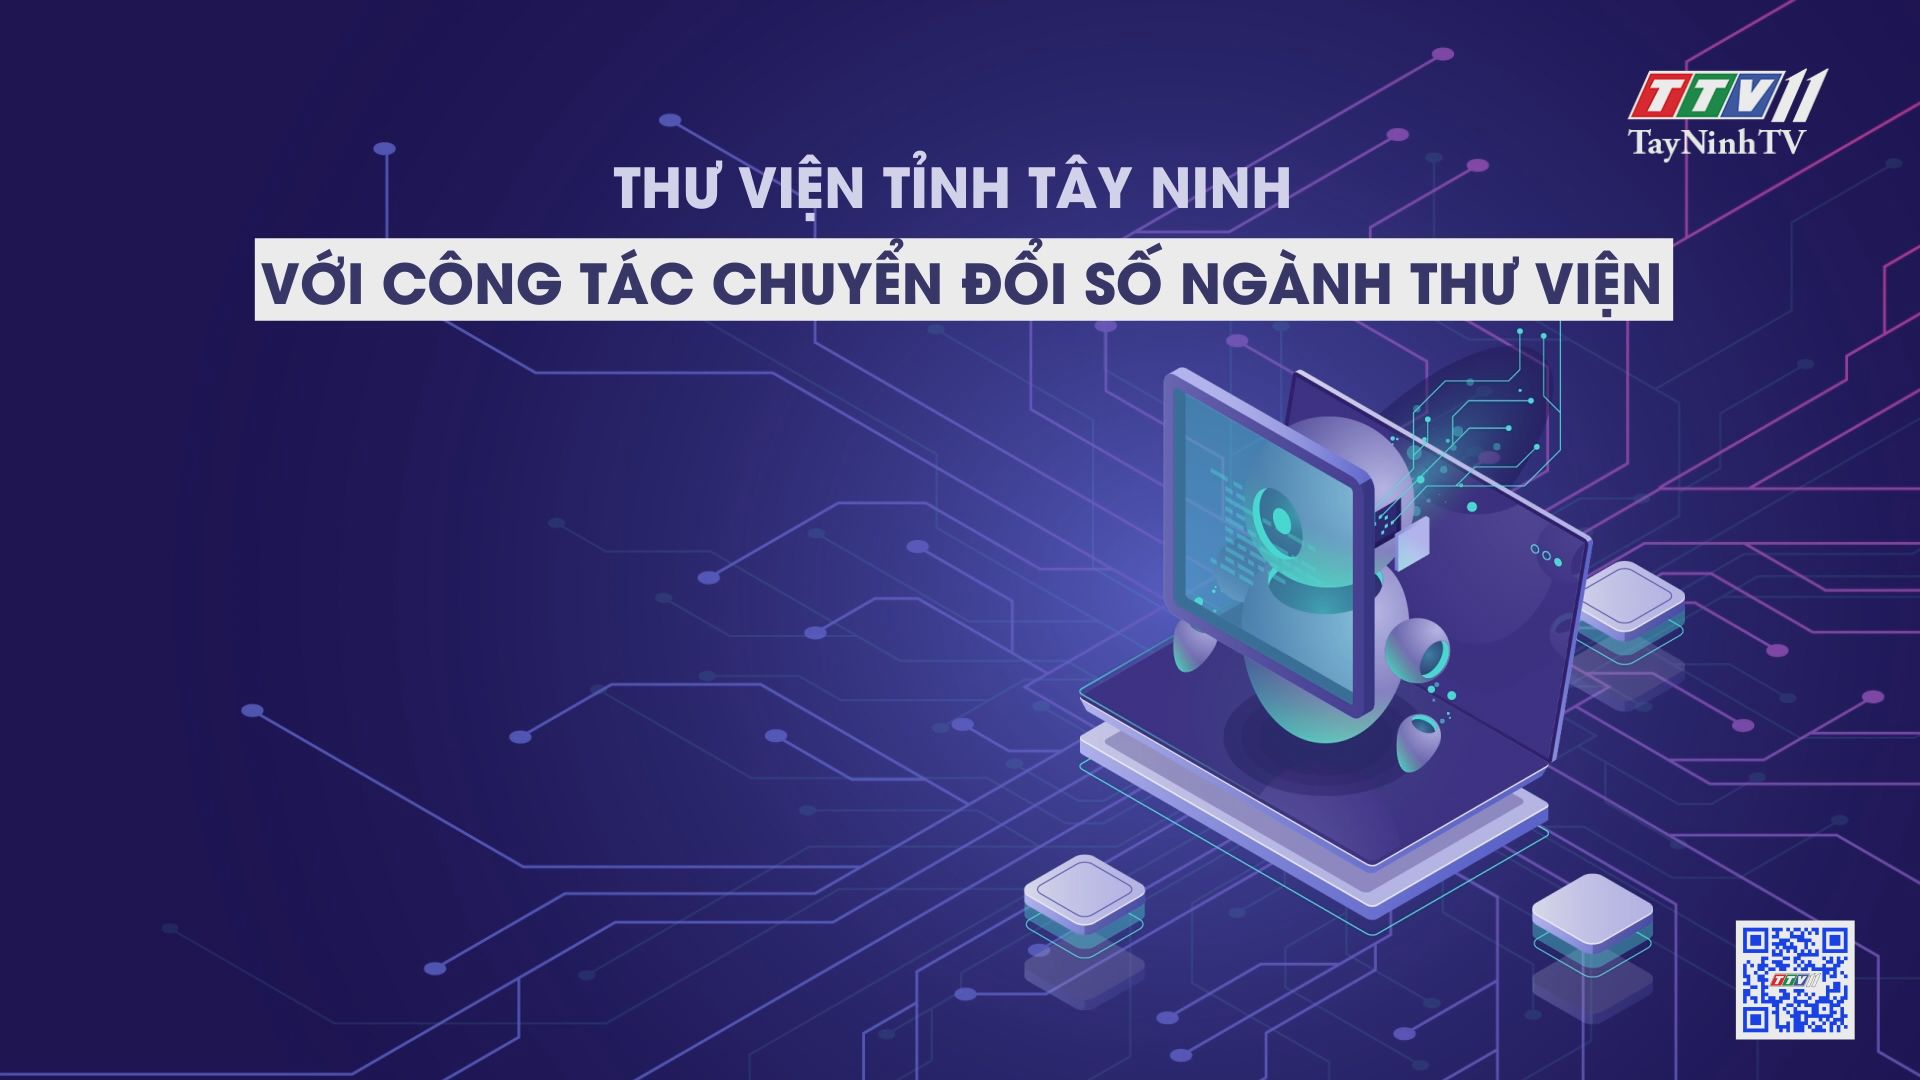 Thư viện tỉnh Tây Ninh với công tác chuyển đổi số ngành thư viện | PHÁP LUẬT VÀ ĐỜI SỐNG | TayNinhTV